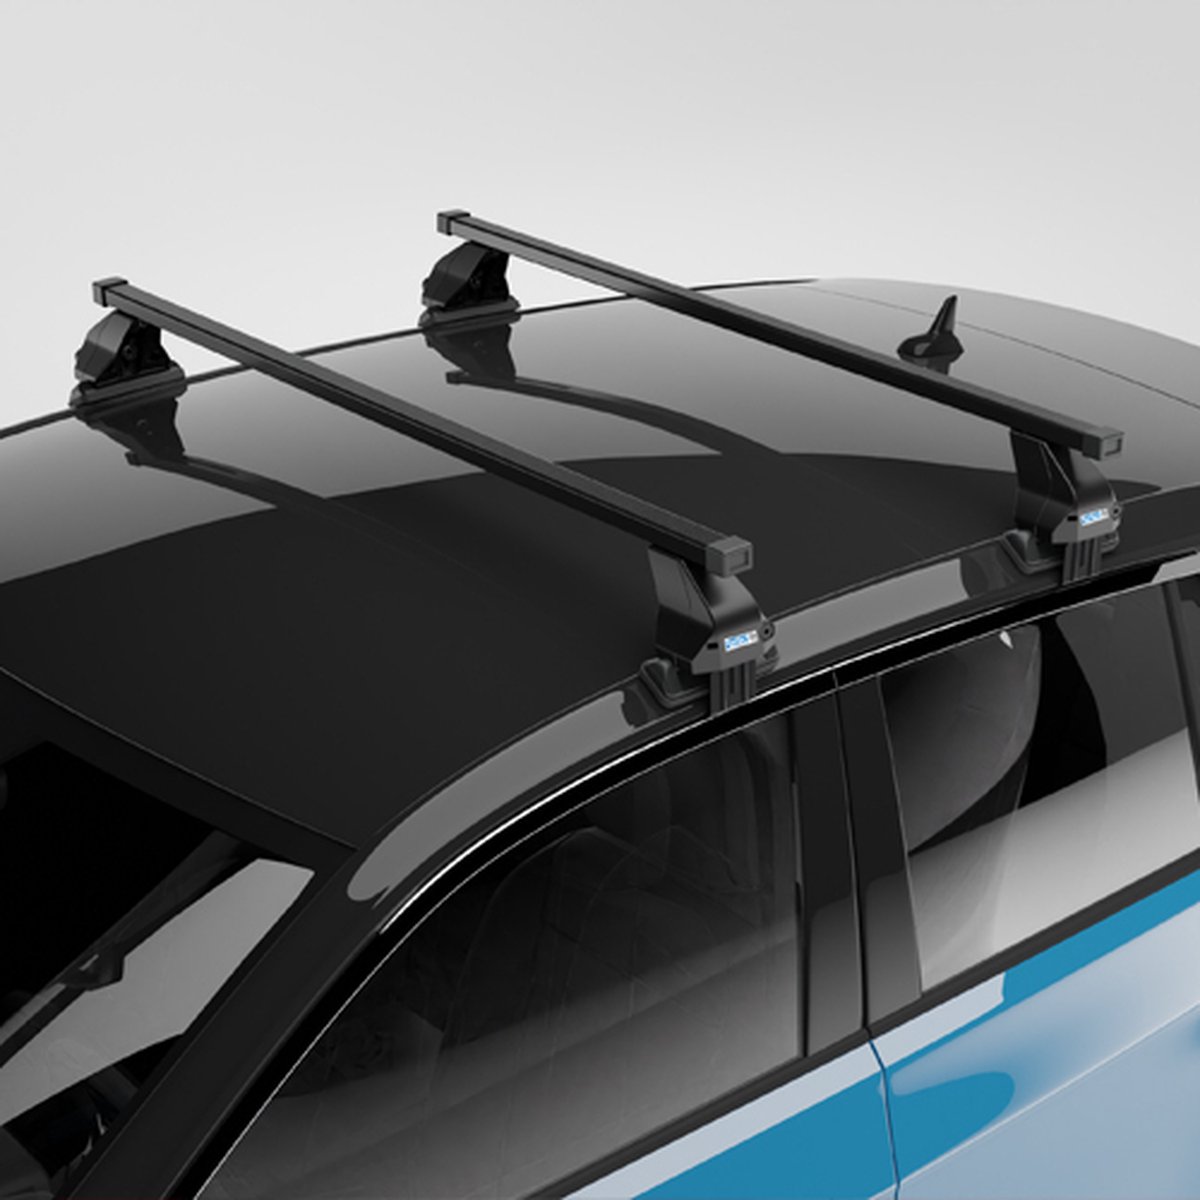 Dakdragers geschikt voor Suzuki Swift 5 deurs hatchback vanaf 2017